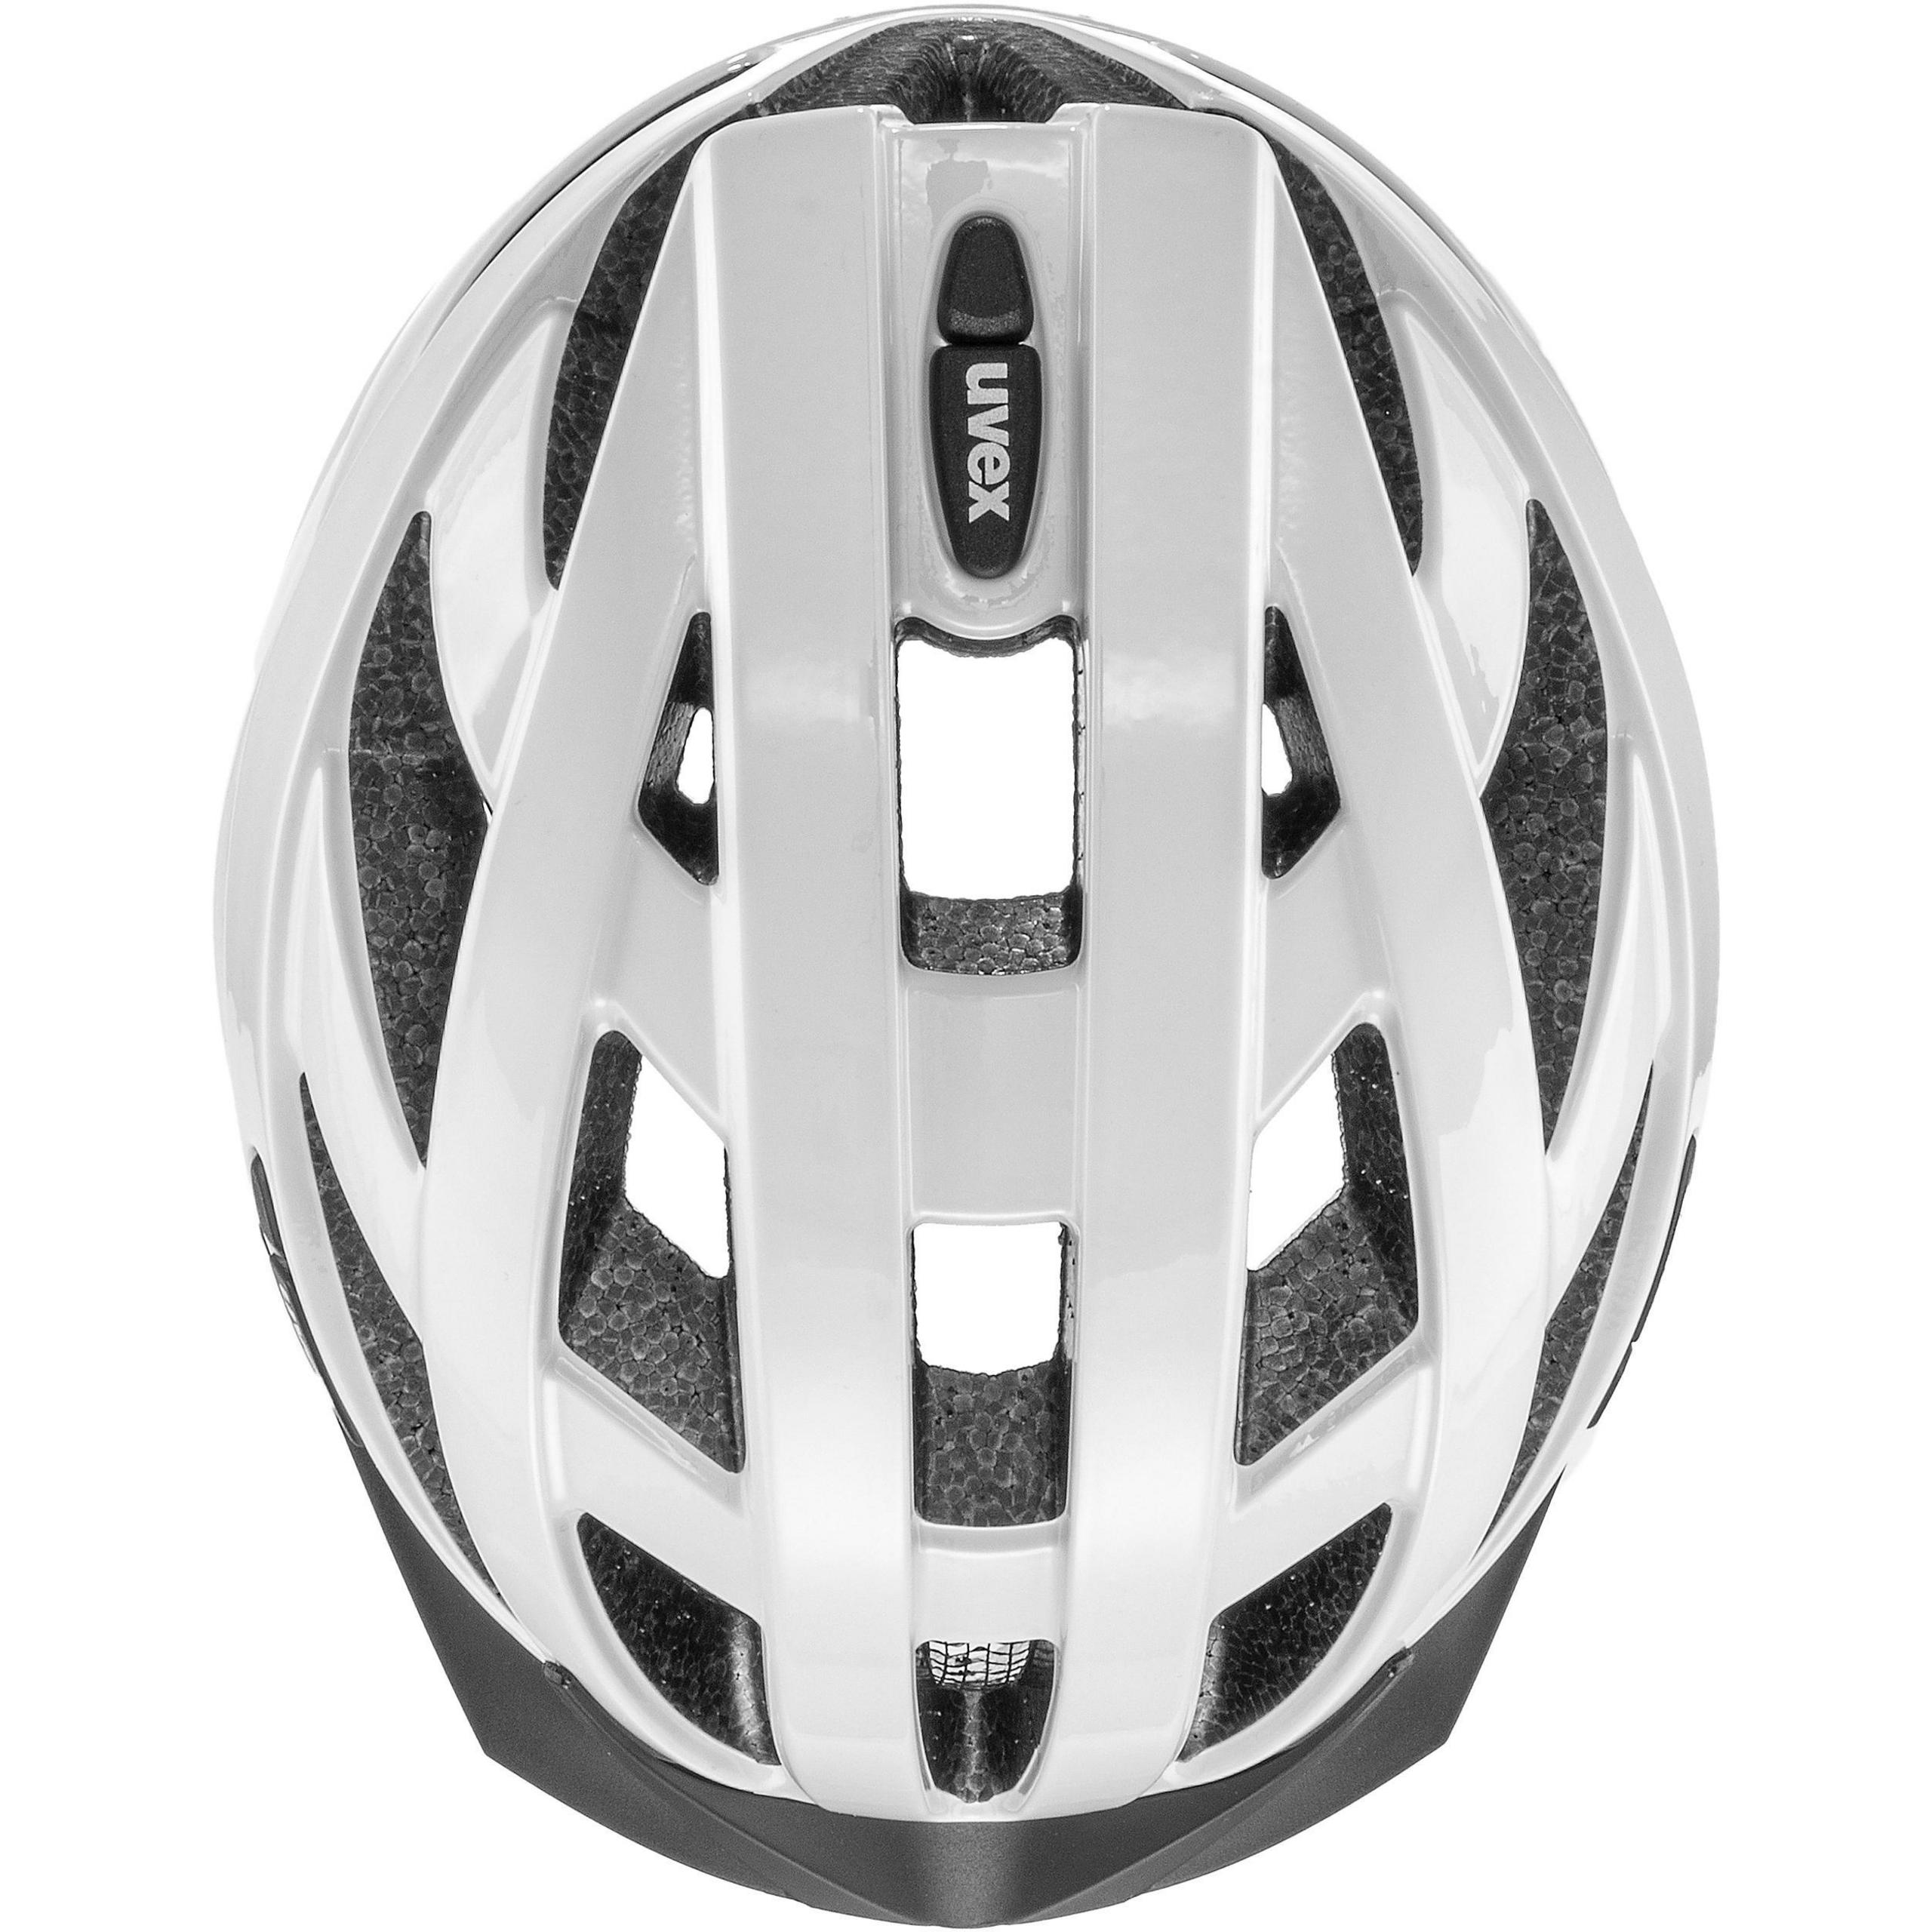 uvex bicycle helmet